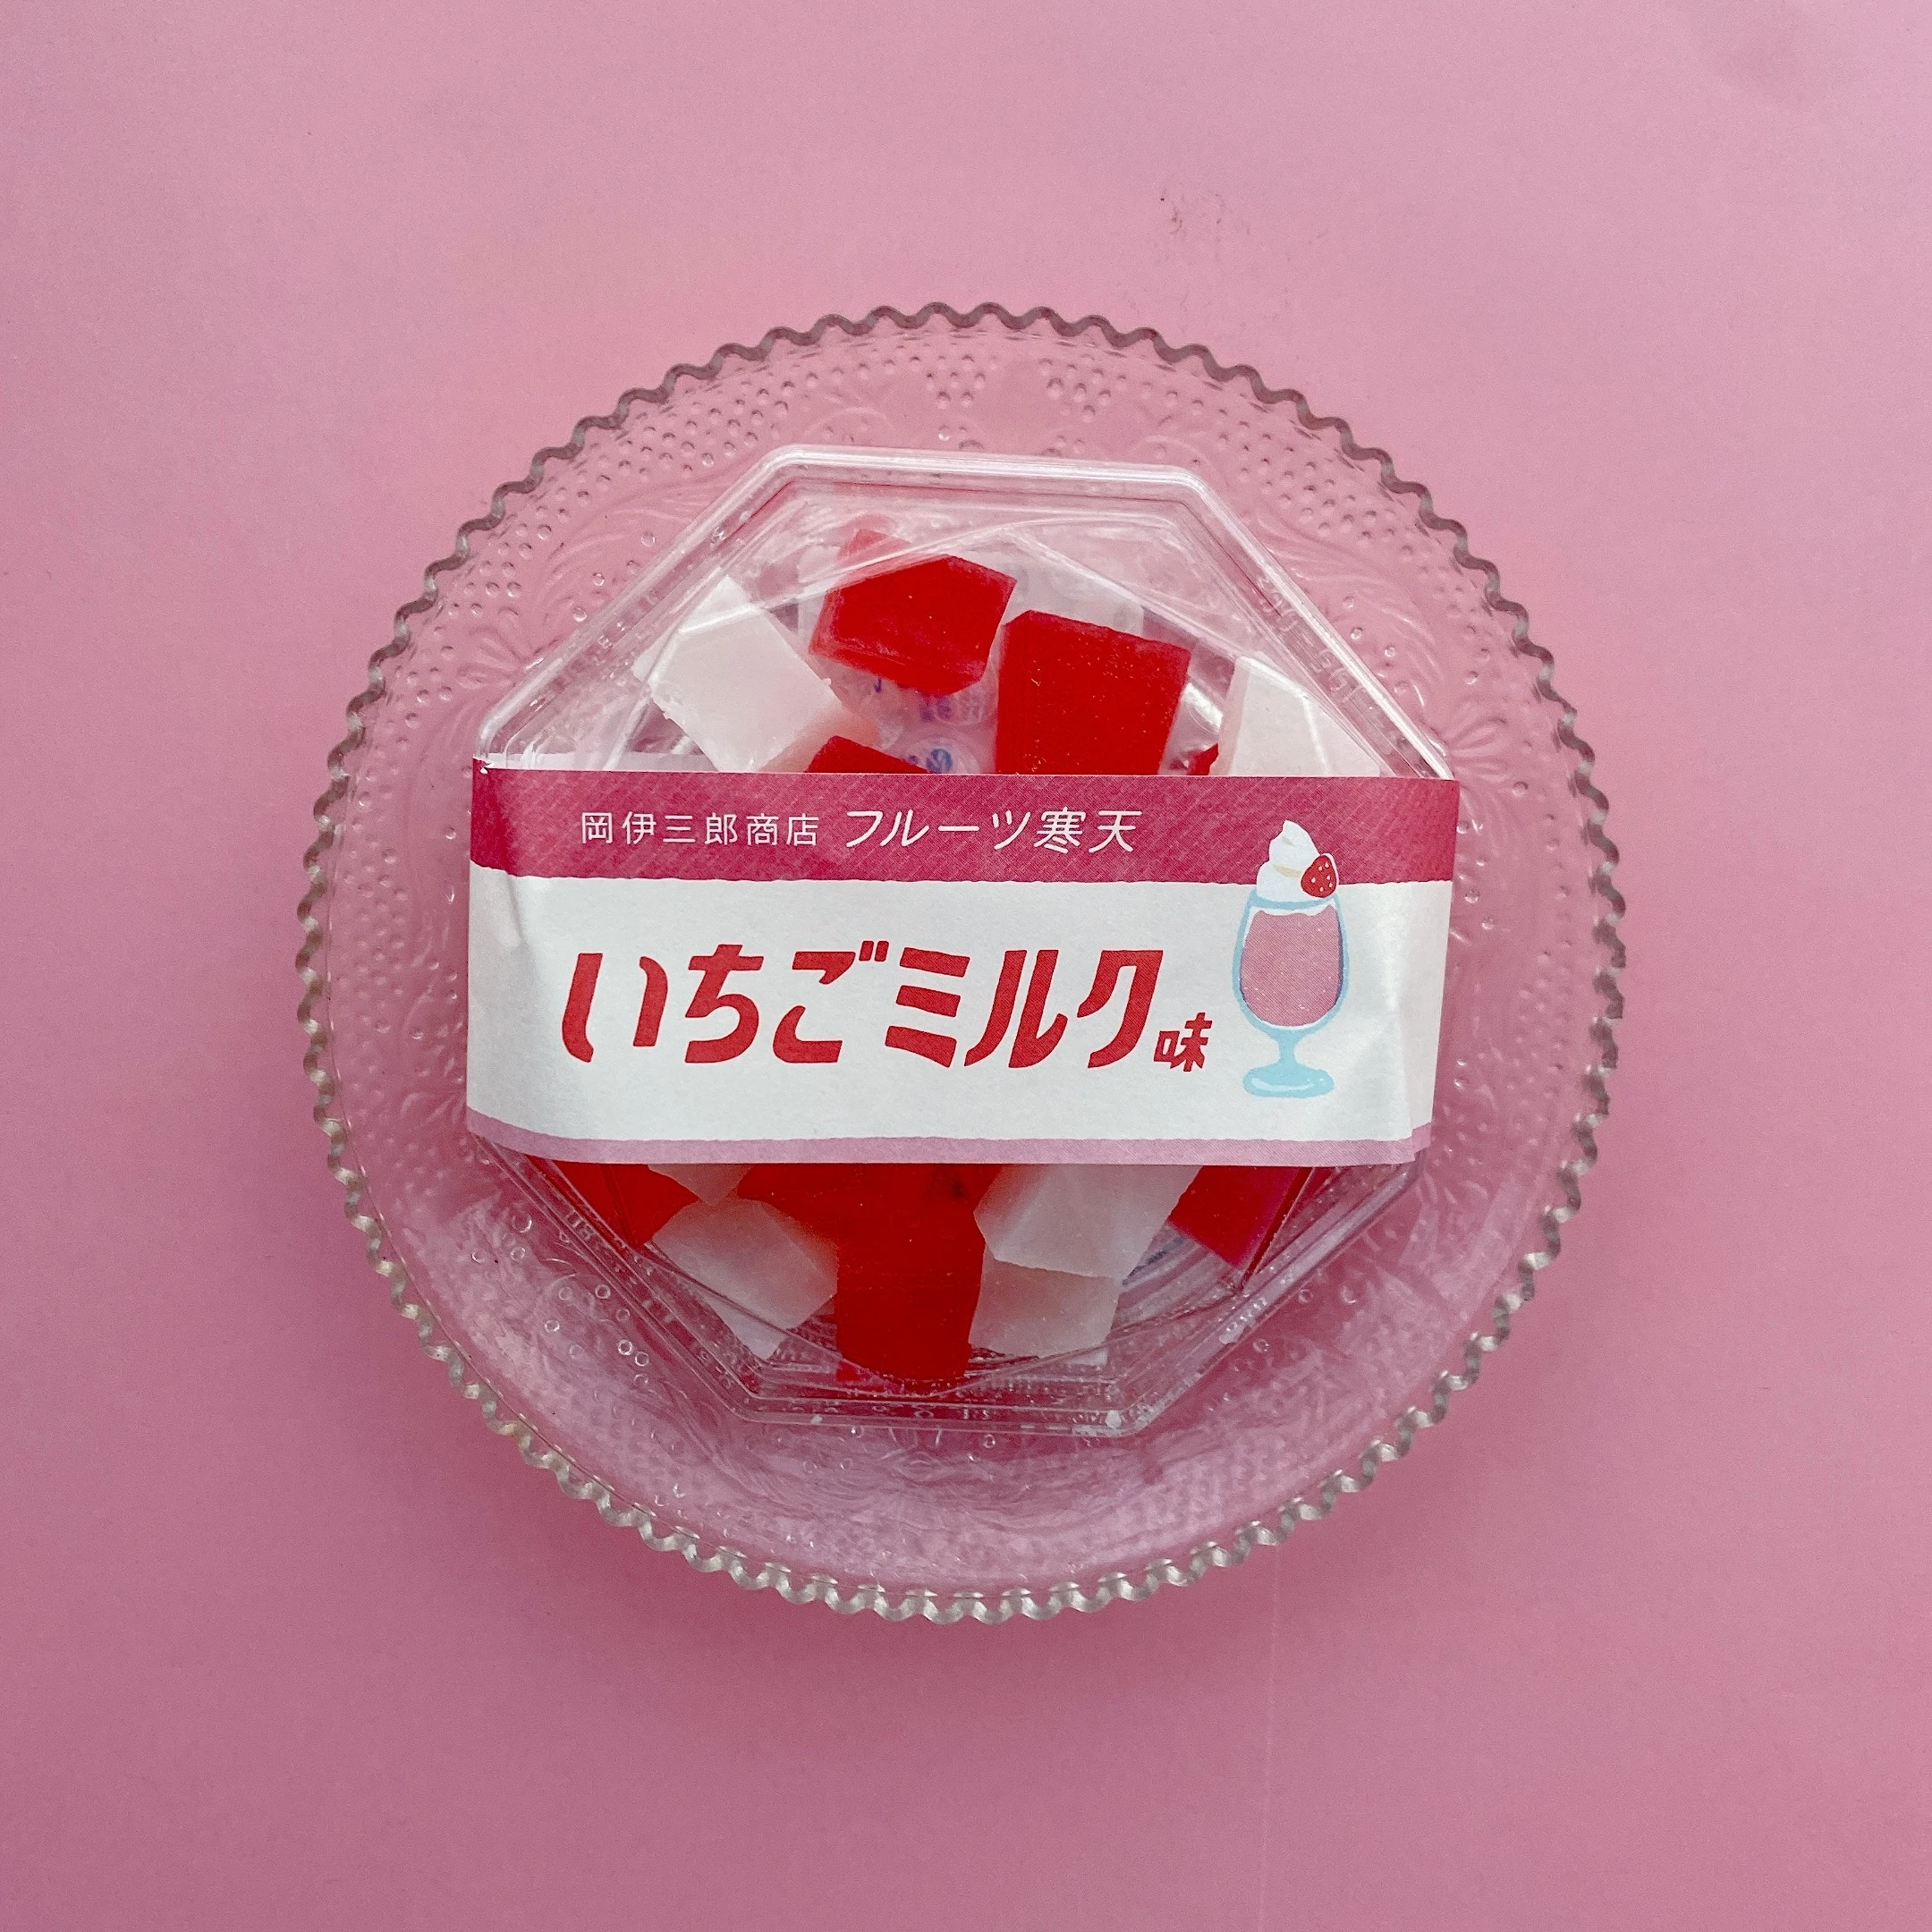 日本百貨店で販売されている琥珀糖「いちごミルク」